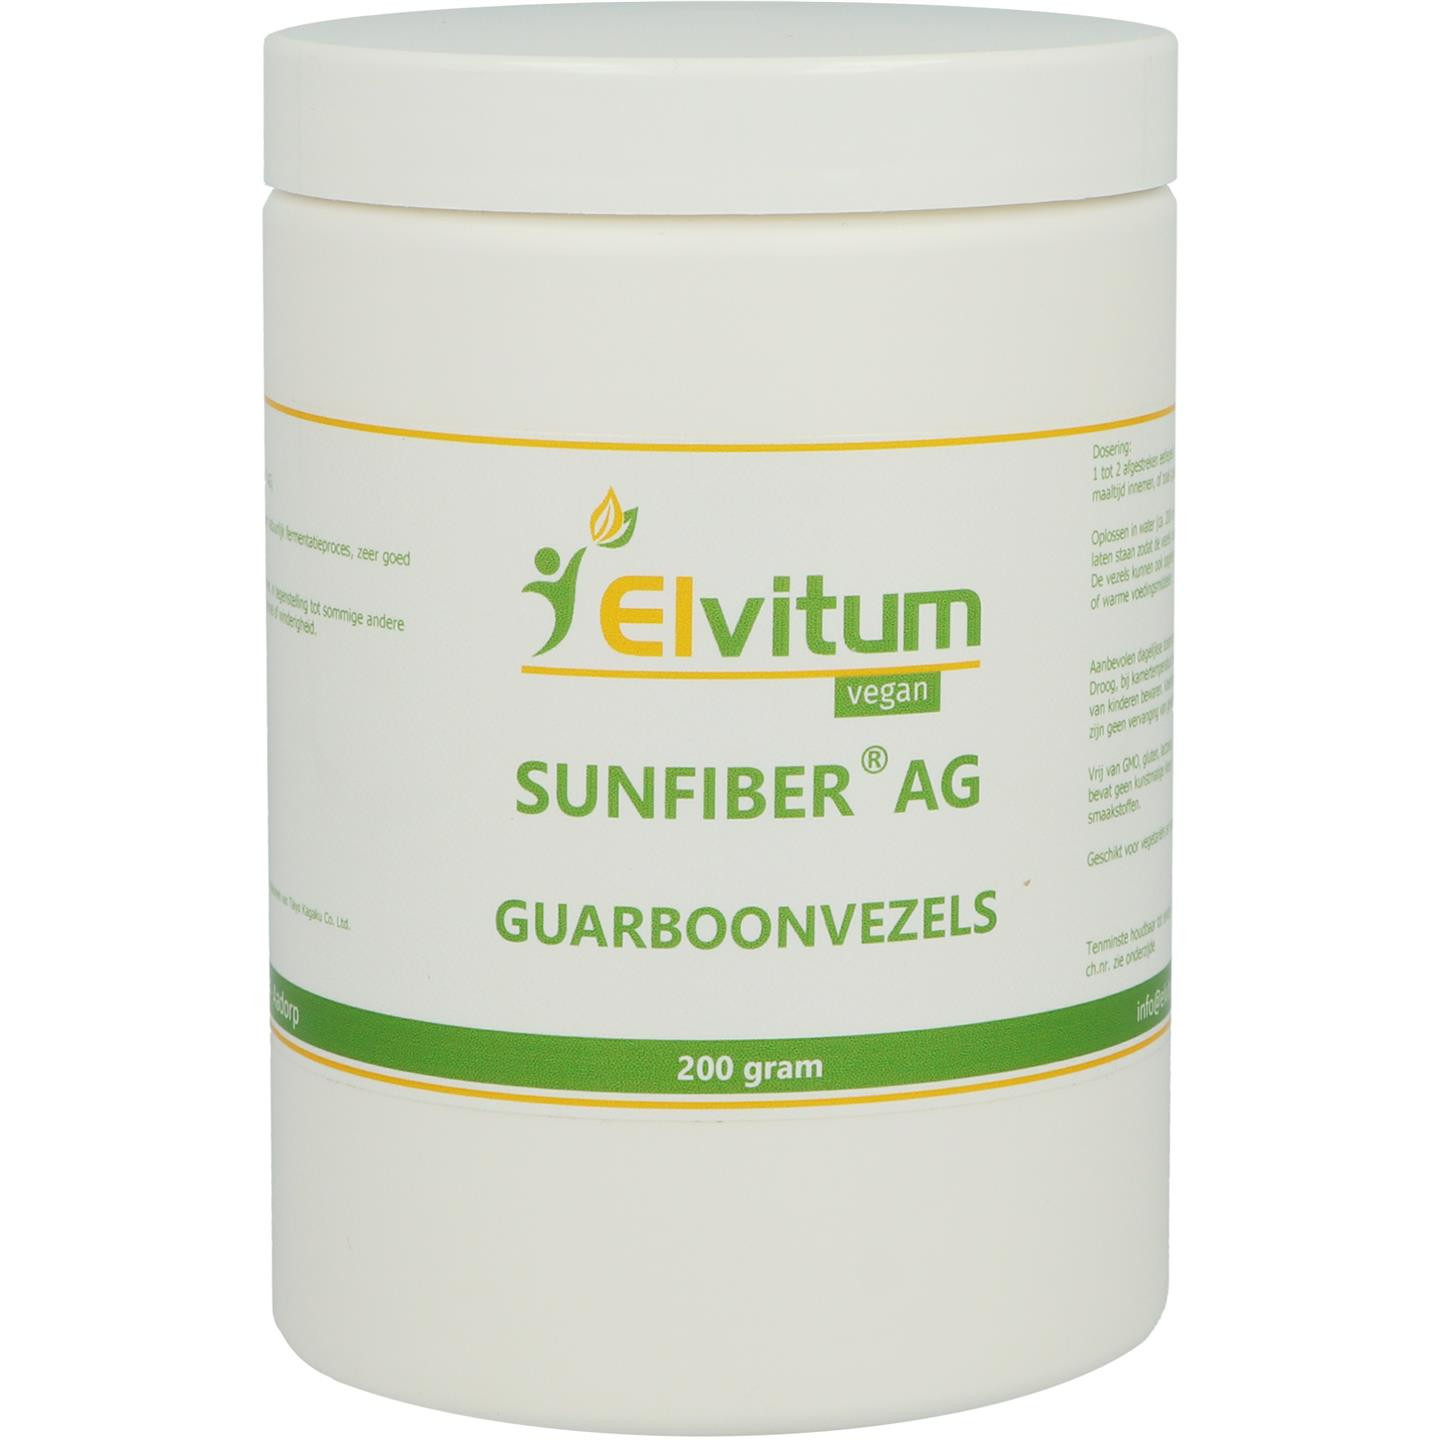 Sunfiber AG (Guarboonvezels)